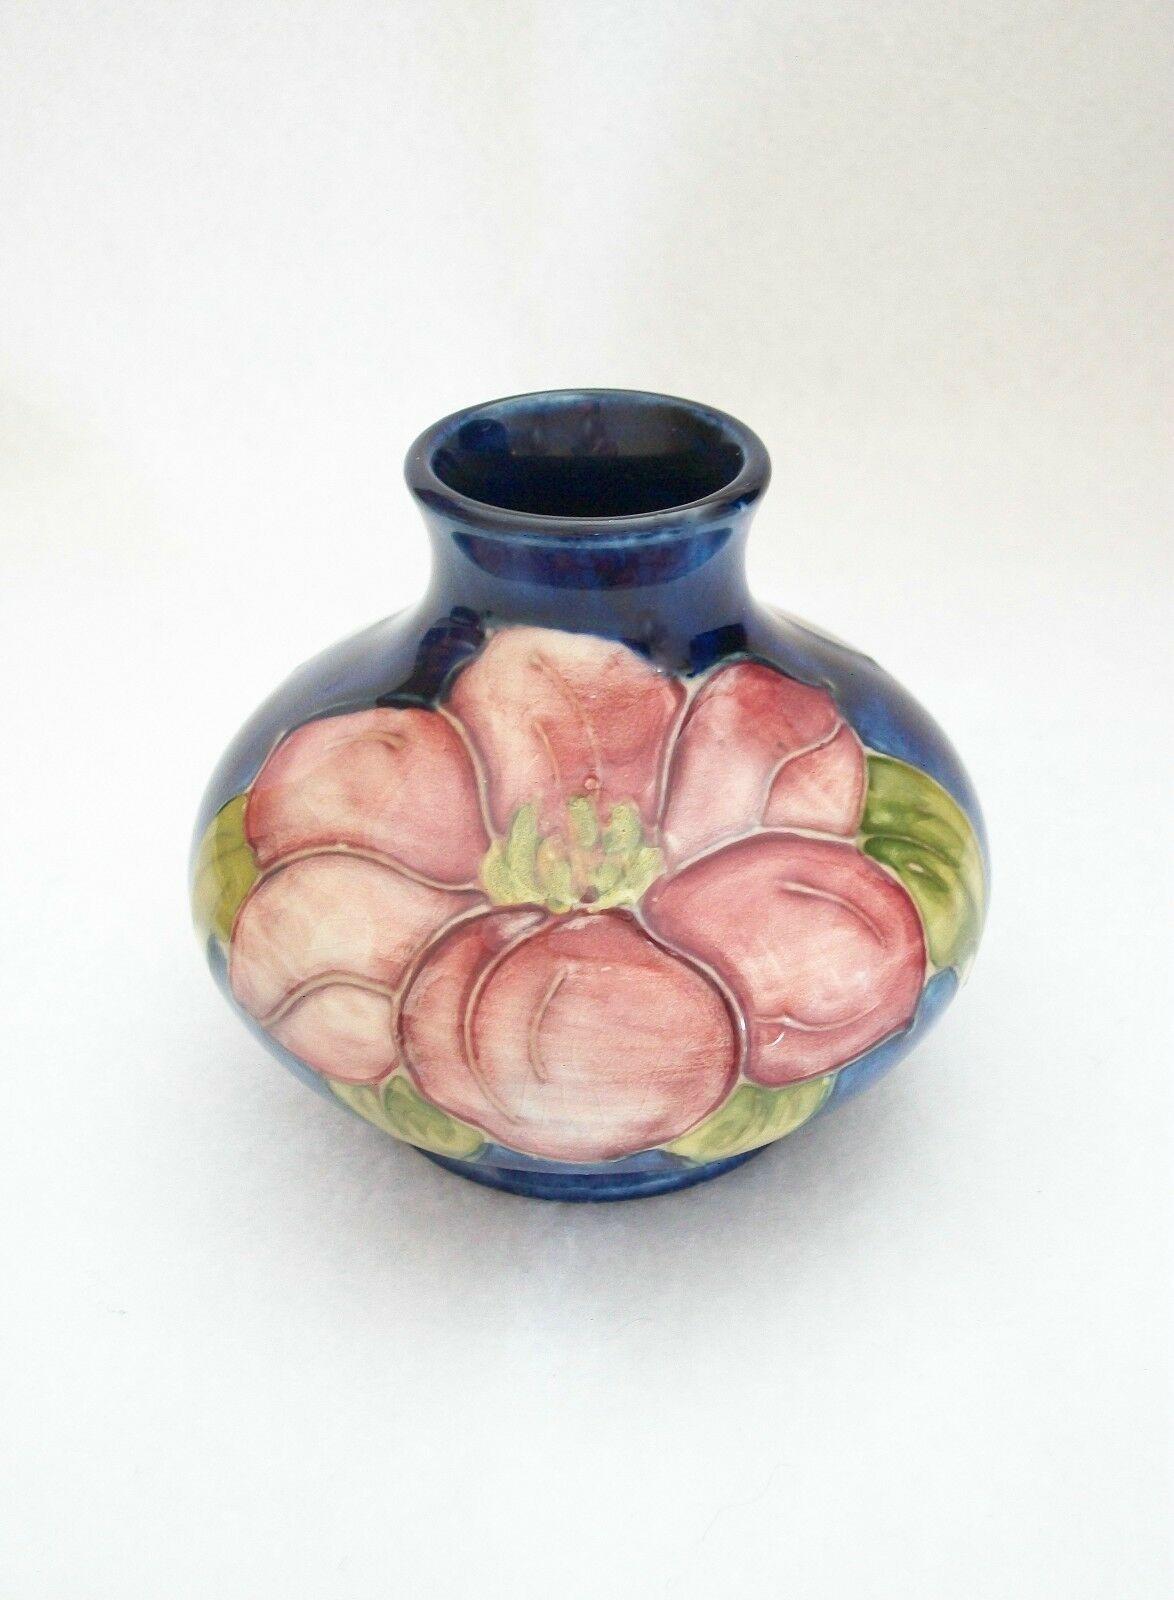 MOORCROFT - 'Clematis' - Vase en céramique Vintage Arts & Crafts - peint à la main avec un fond bleu - timbres imprimés à la base - K.K. - circa 1950-86. 

Excellent état - pas de perte - pas de dommage - pas de restauration - signes mineurs d'âge